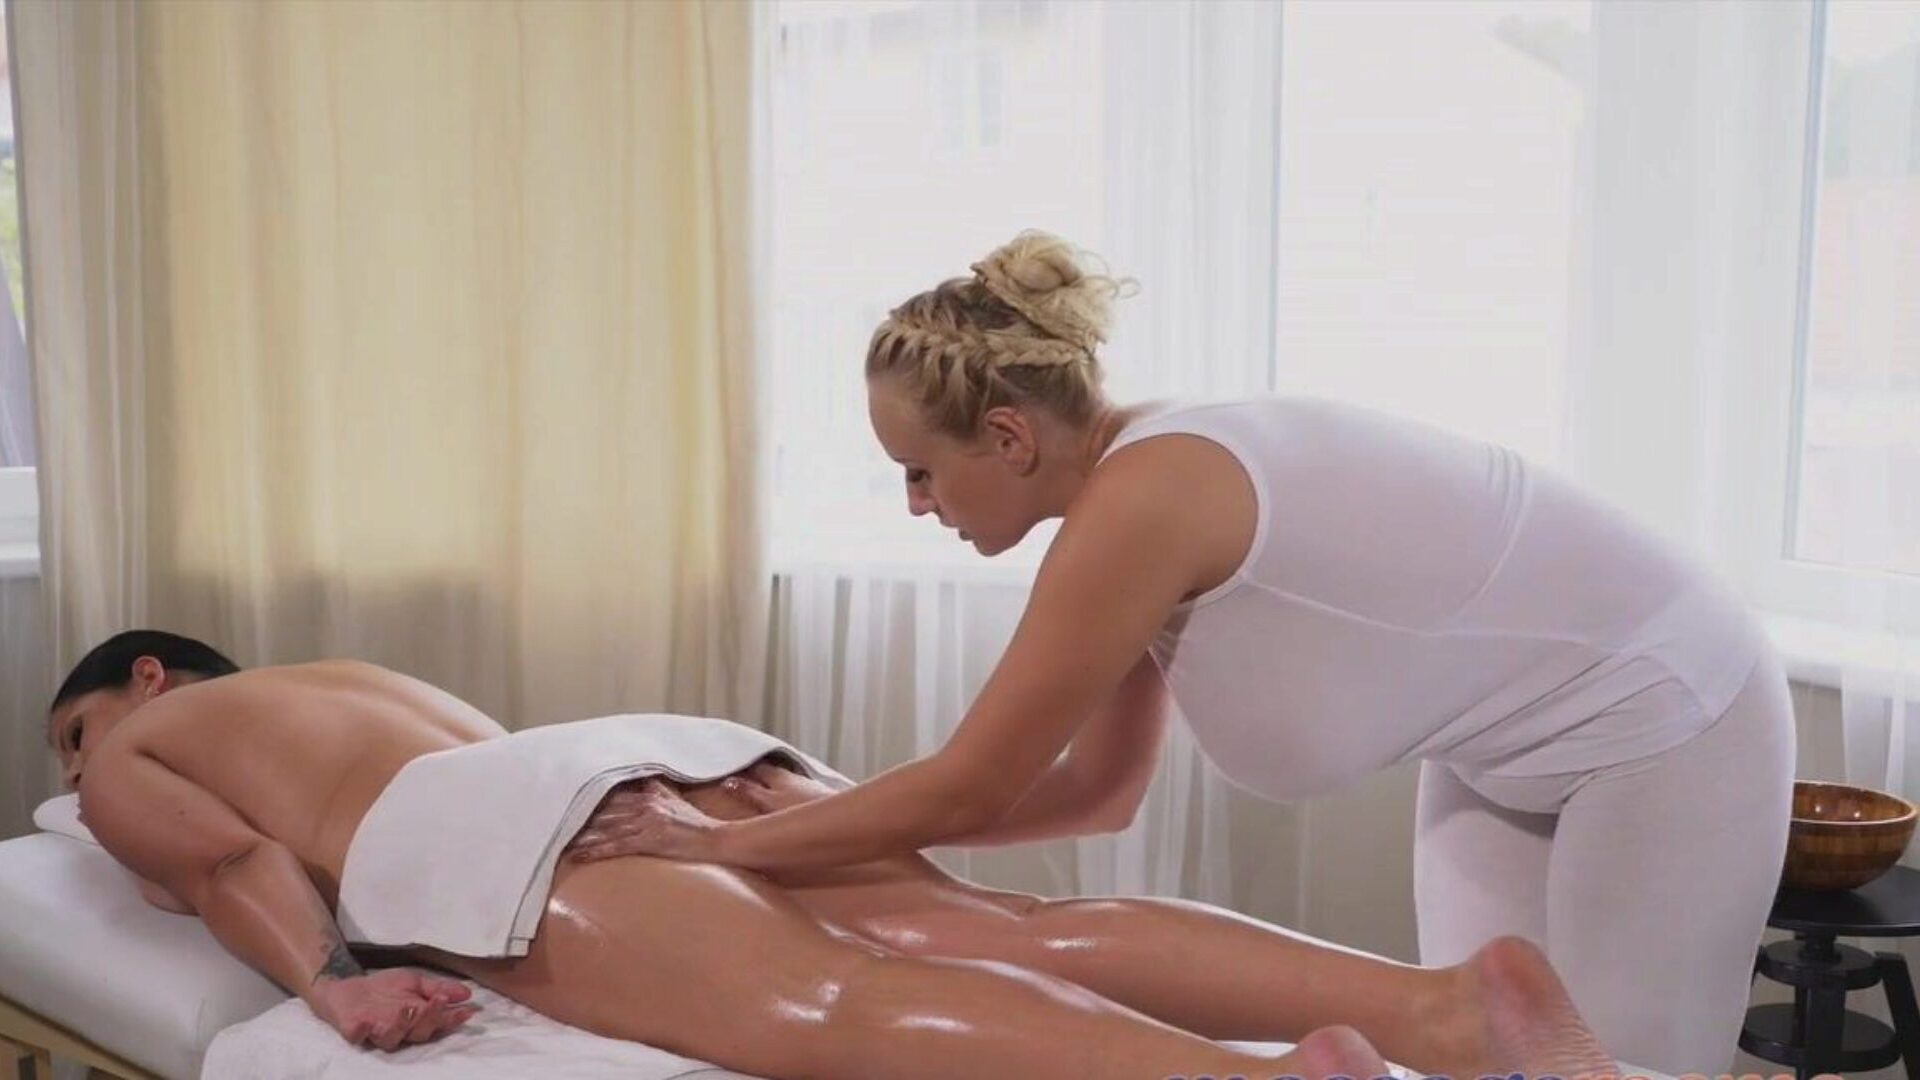 gabinety masażu dojrzałe kobiety z dużymi, wrodzonymi skurczami nożycowymi i duszącymi tyłek